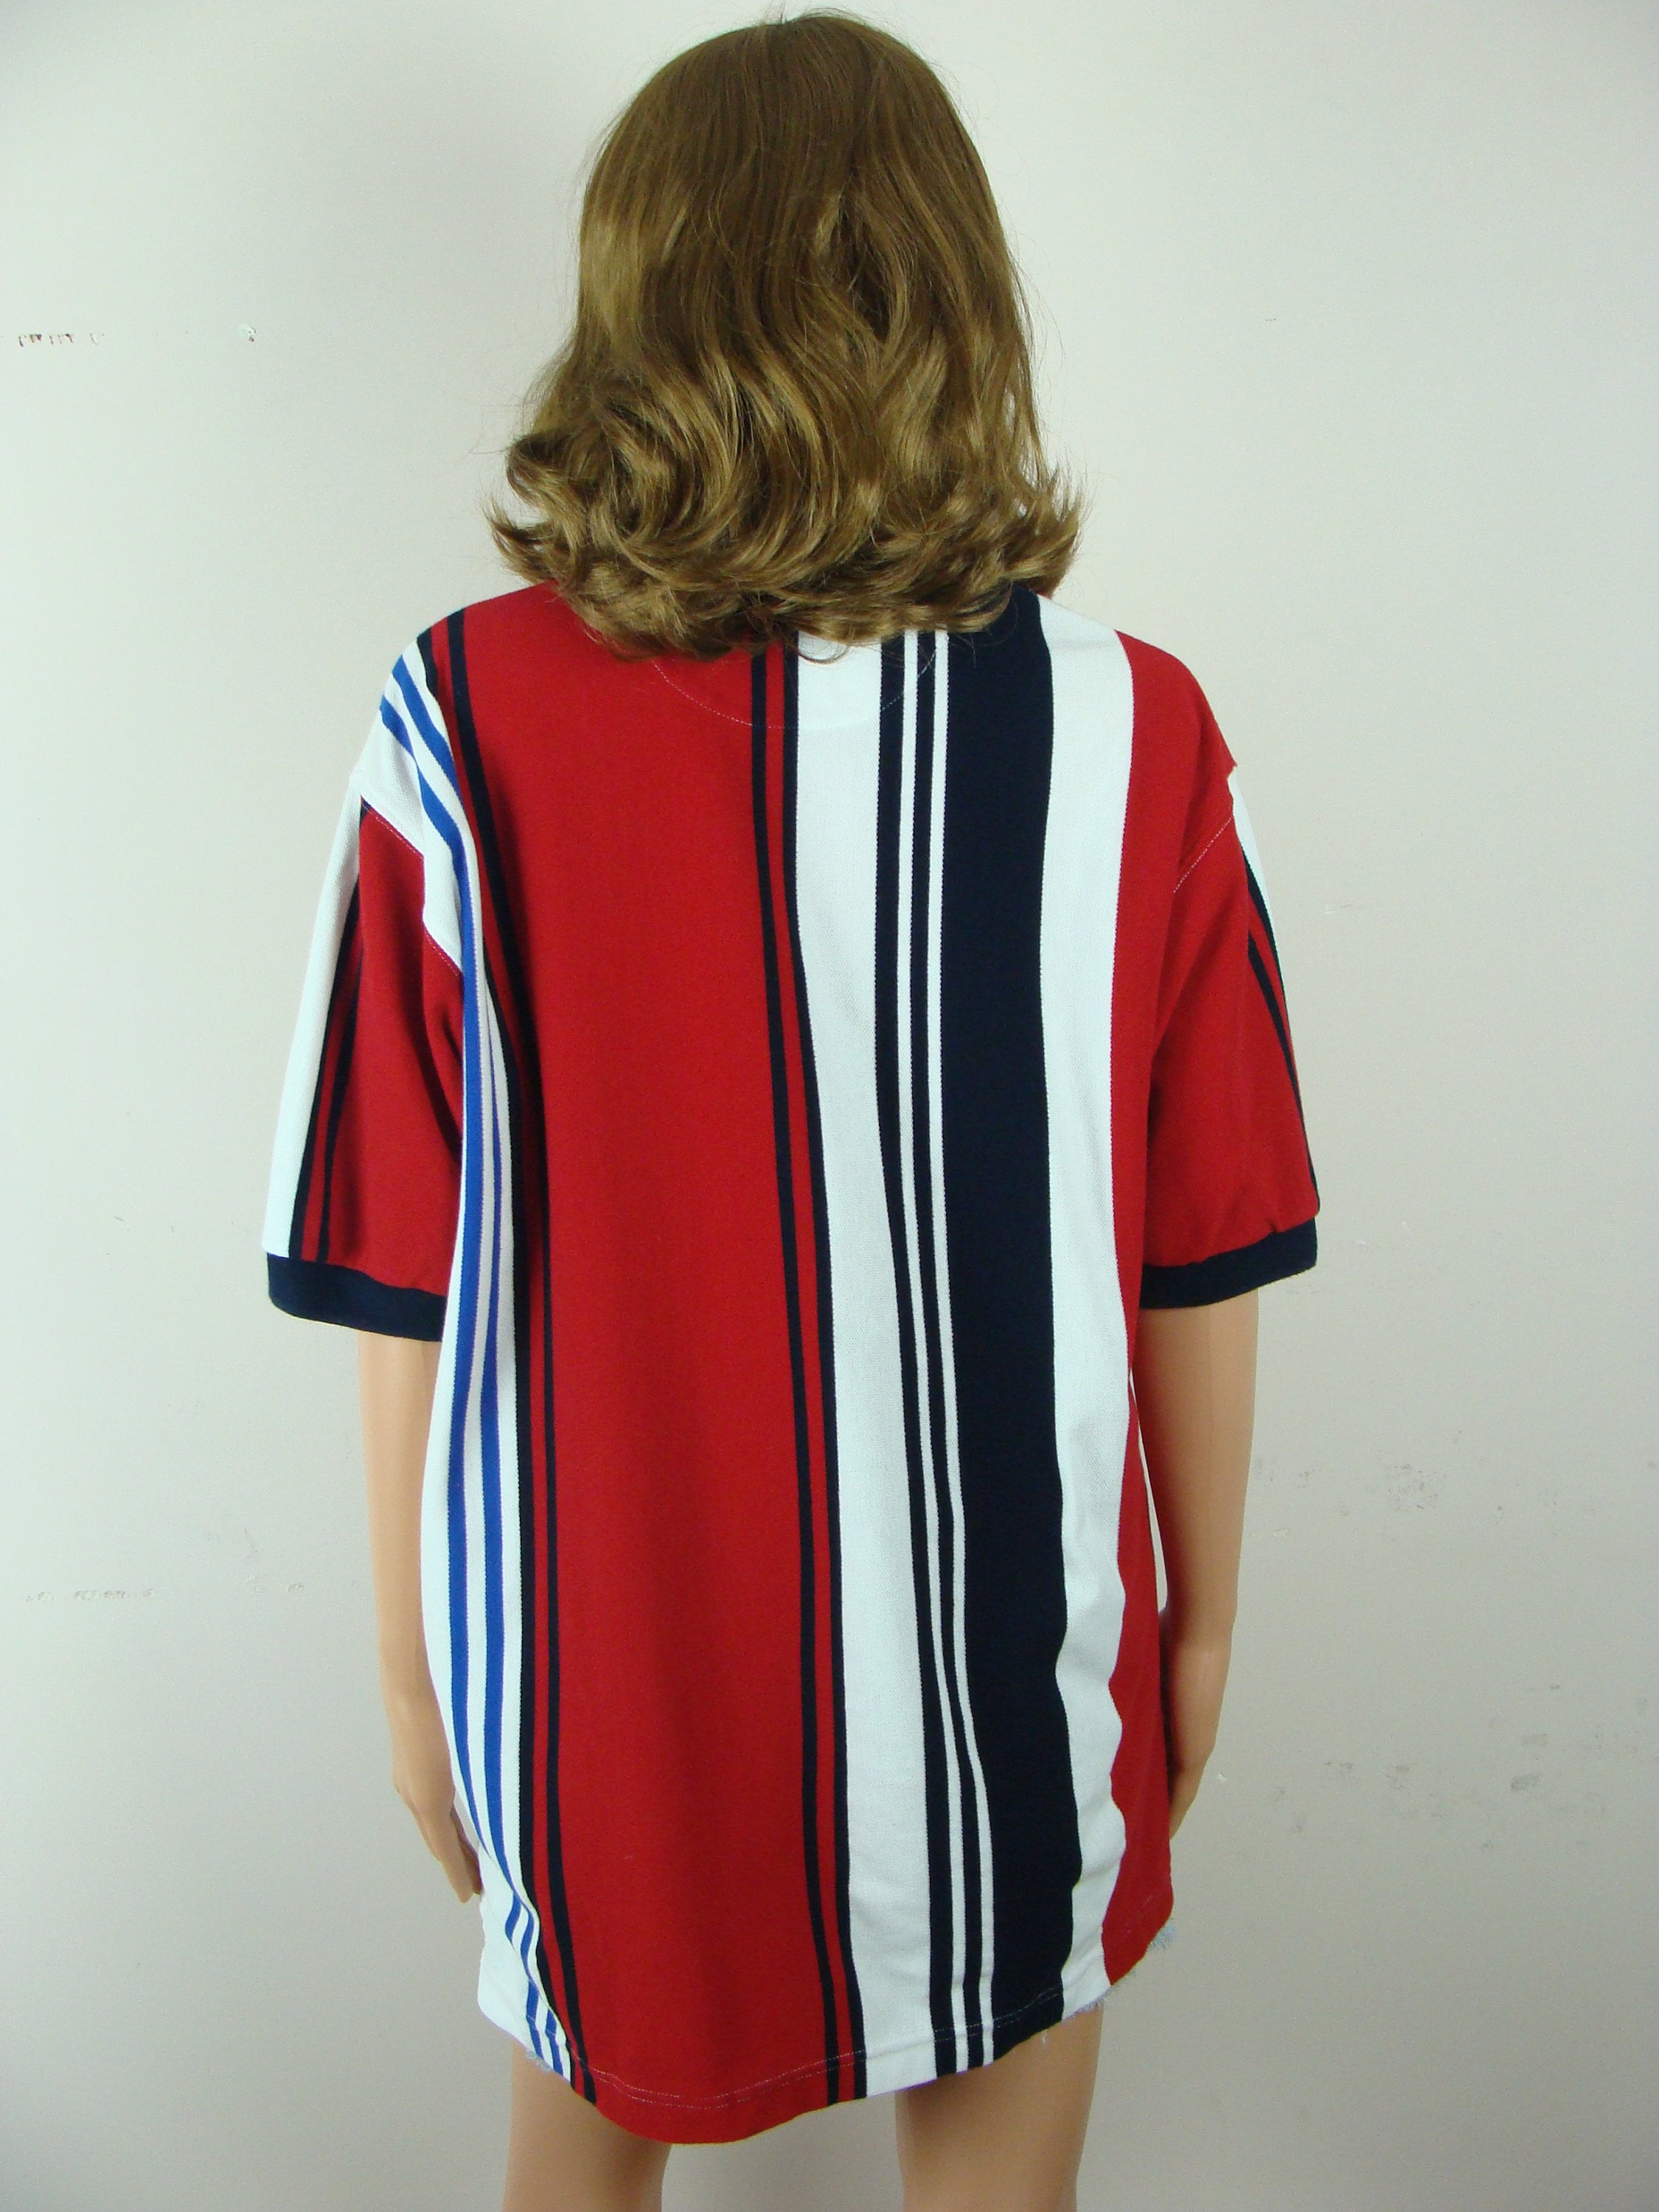 Vintage Chaps Ralph Lauren Oversized Polo Shirt 90s Striped Cotton